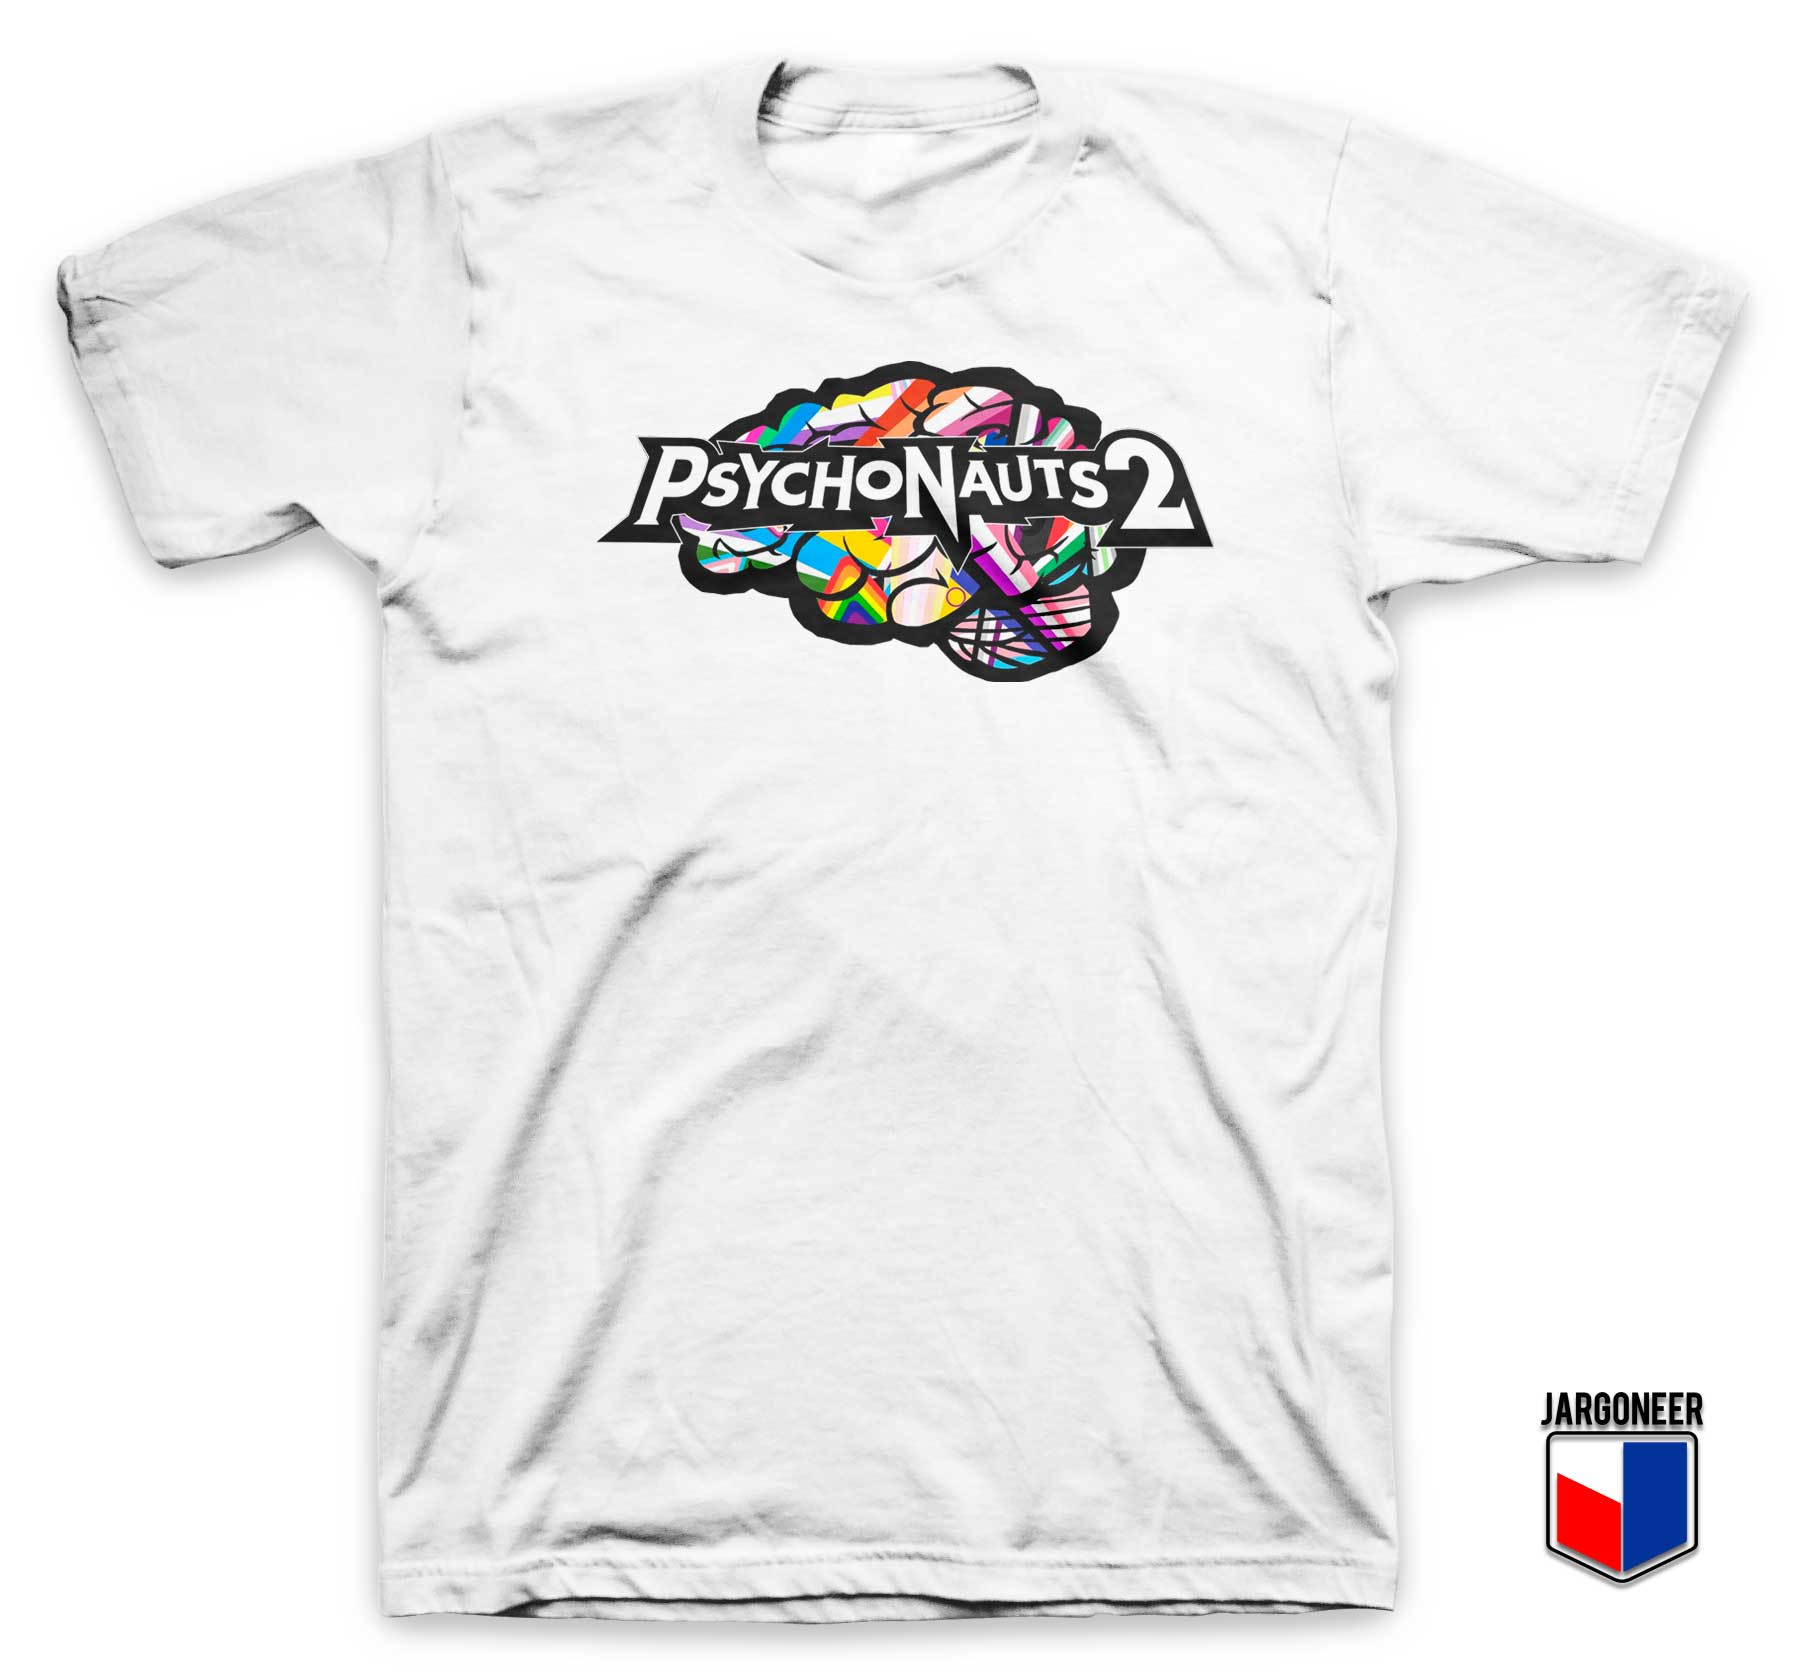 Xbox Psychonauts 2 White T Shirt - Shop Unique Graphic Cool Shirt Designs